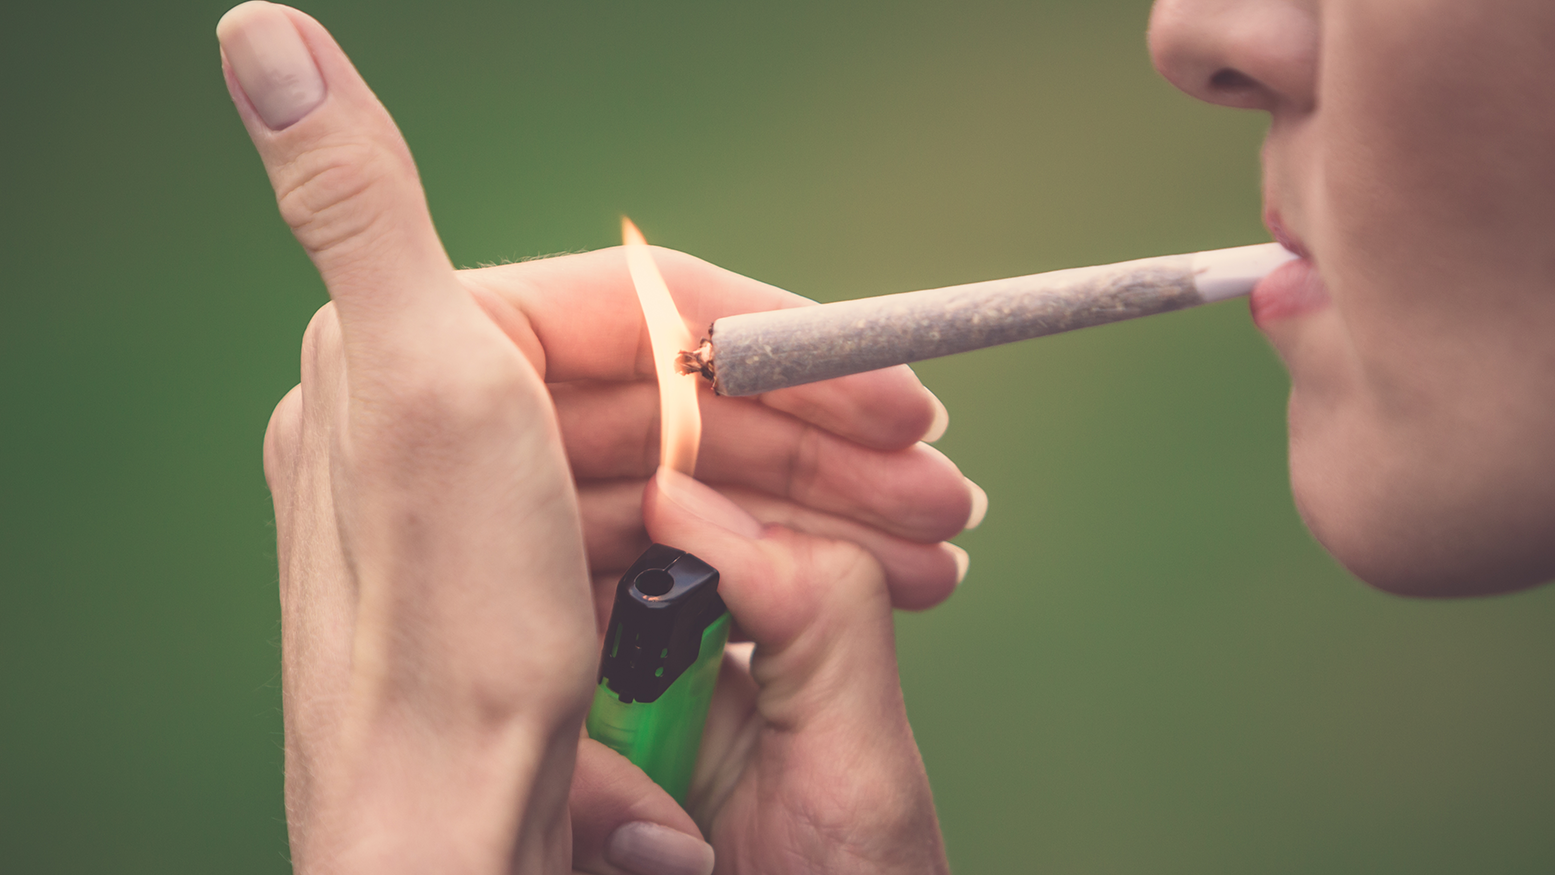 hashmisbruger ryger en joint